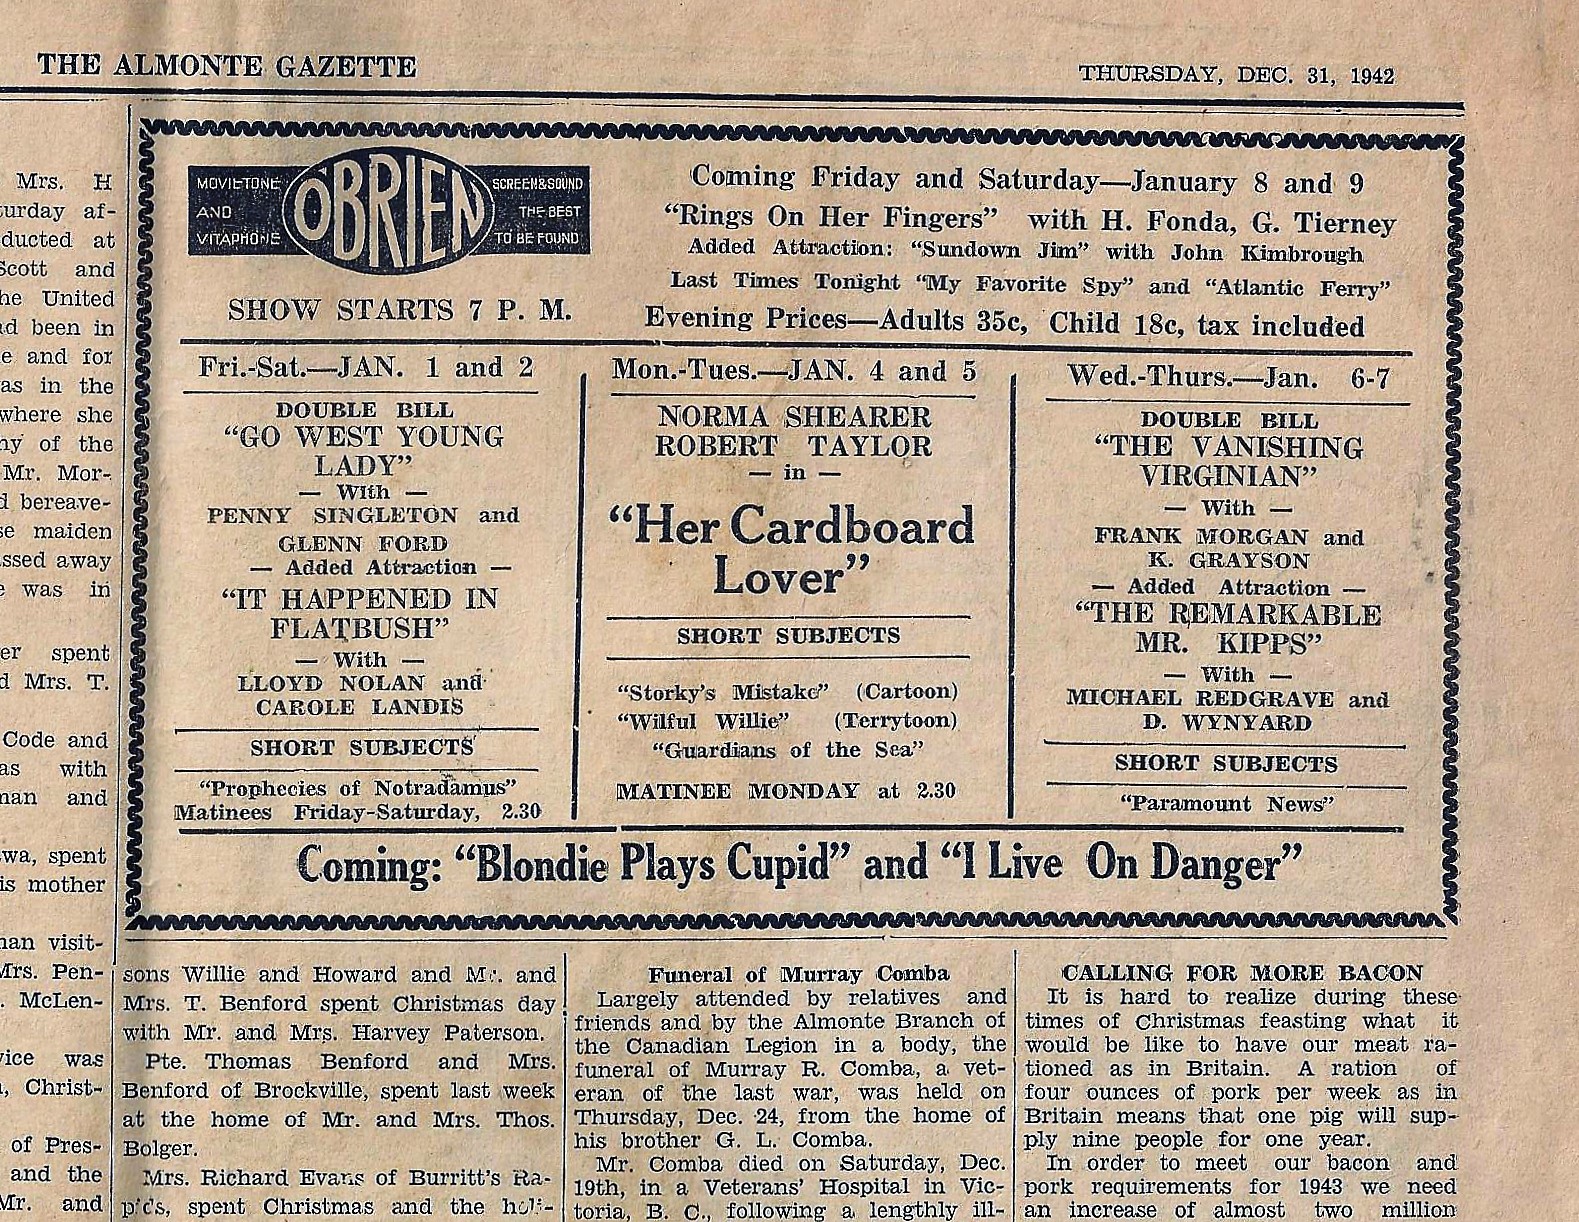 Découpage d’une annonce publicitaire pour le cinéma O’Brien publié dans The Almonte Gazette le 31 décembre 1942